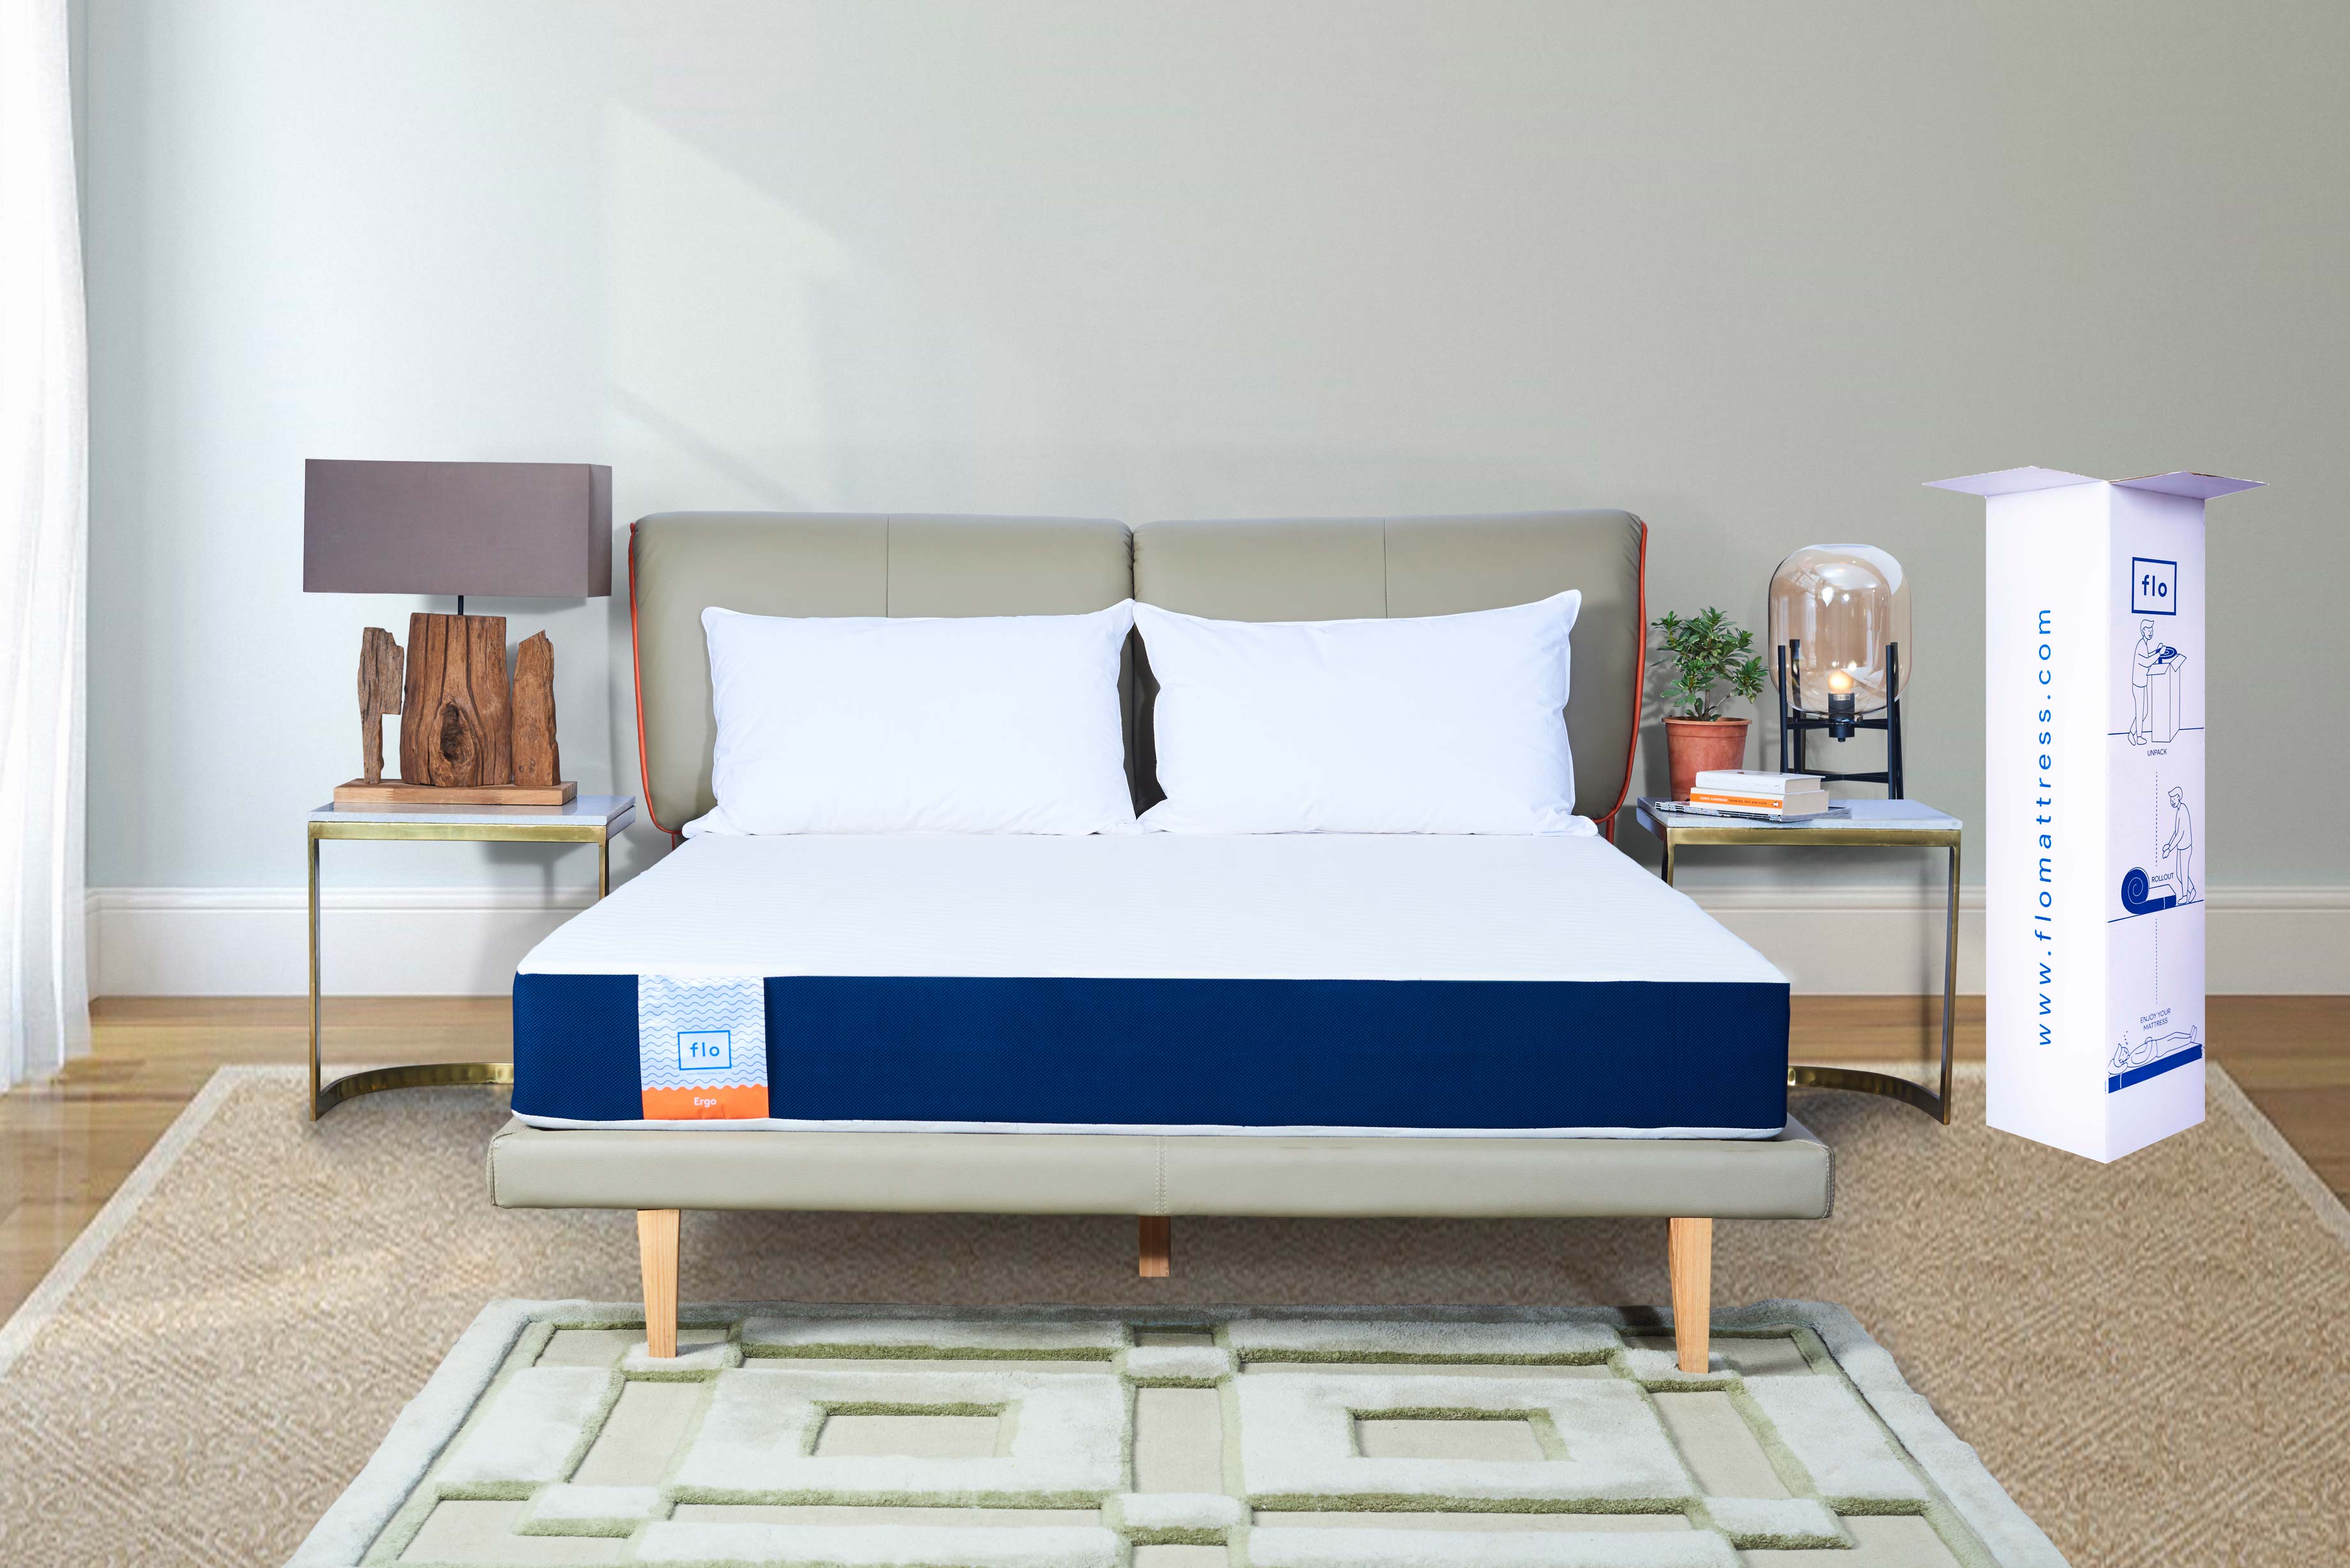 flo mattress price list